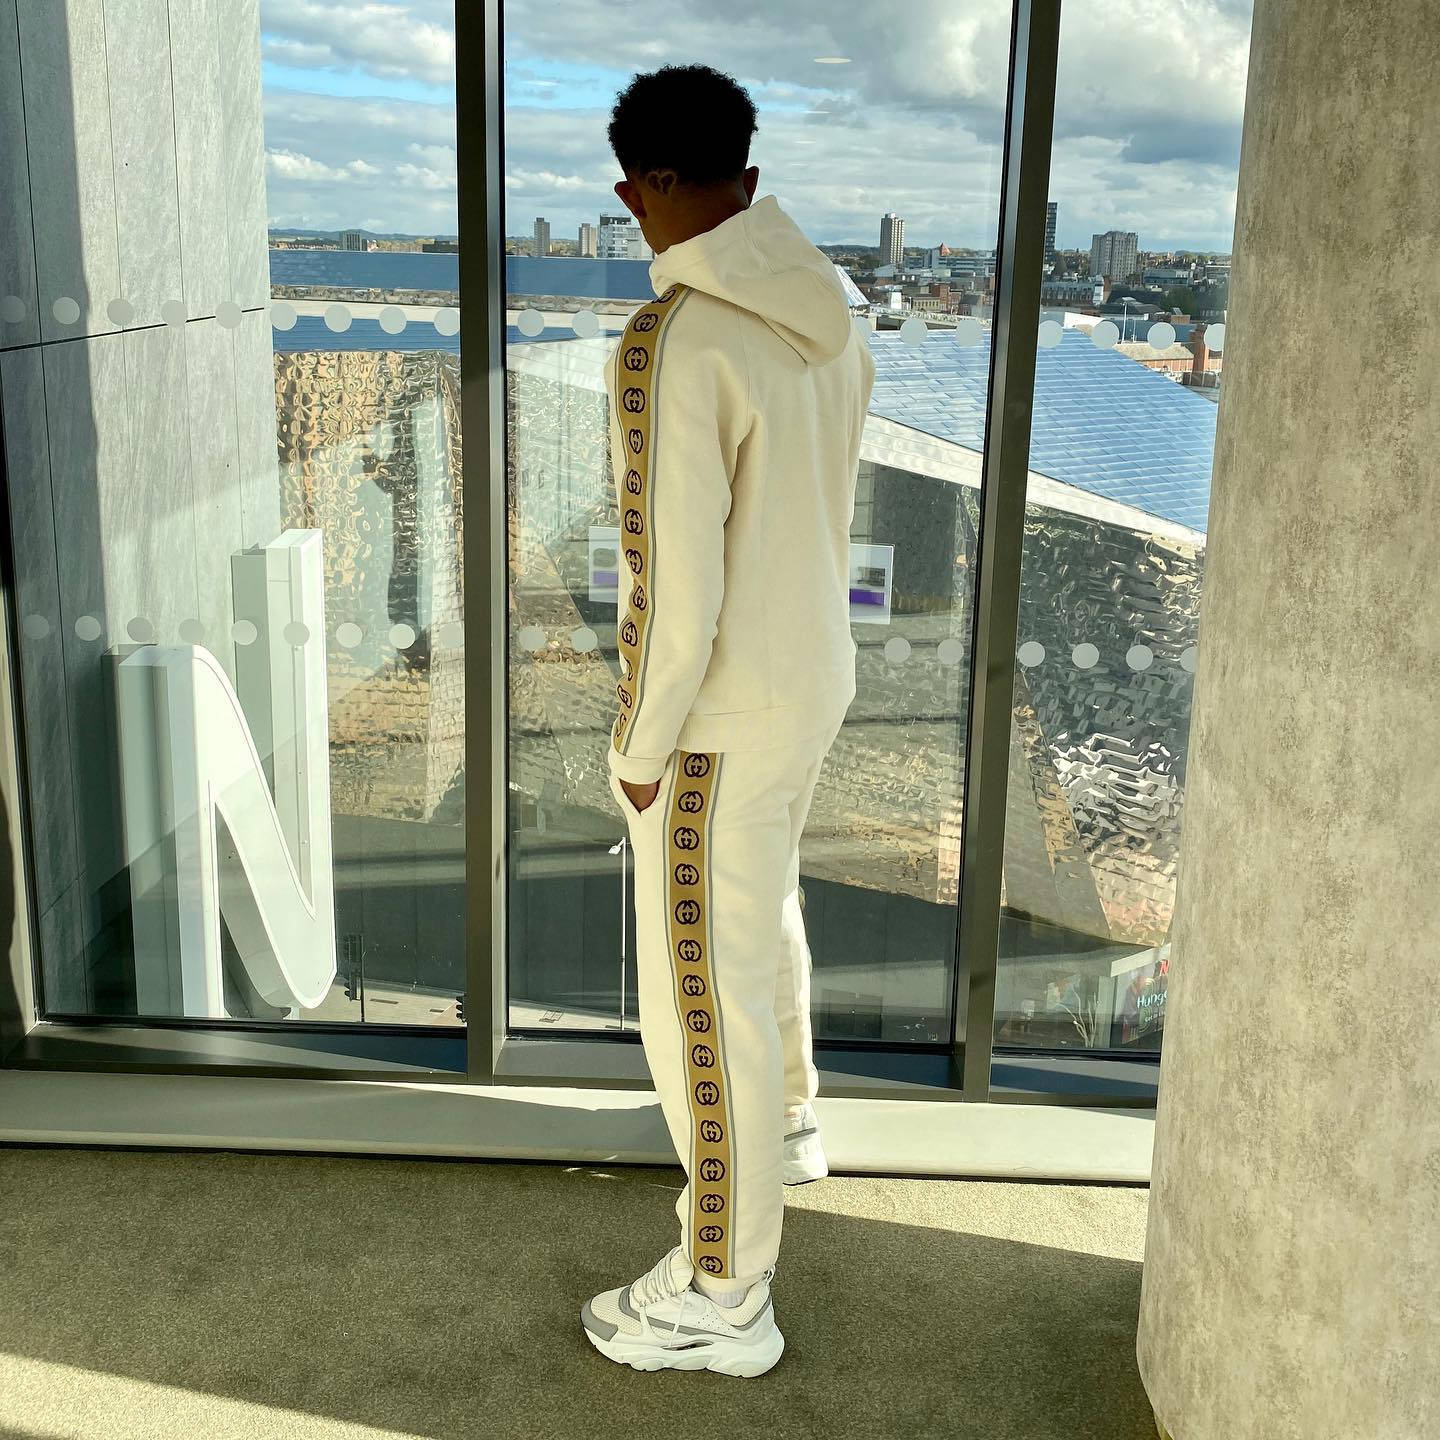 Wesley Fofana stylishly donned in a luxury sweatsuit. Wallpaper